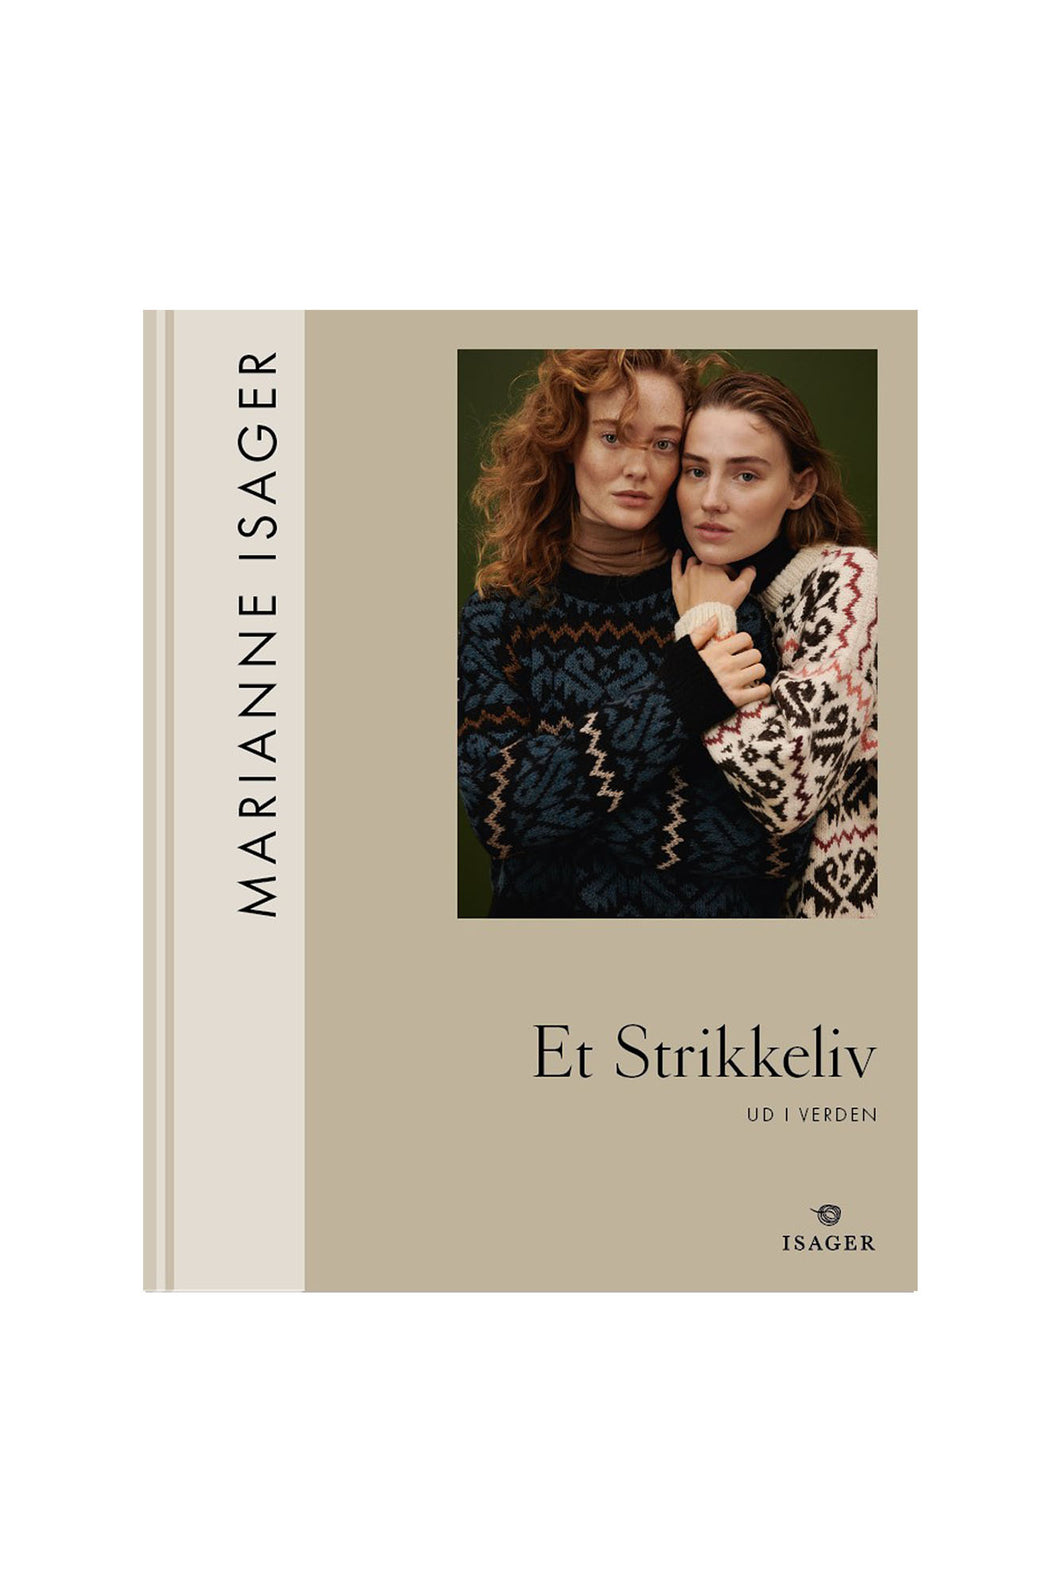 Et strikkeliv - ud i verden - Marianne Isager